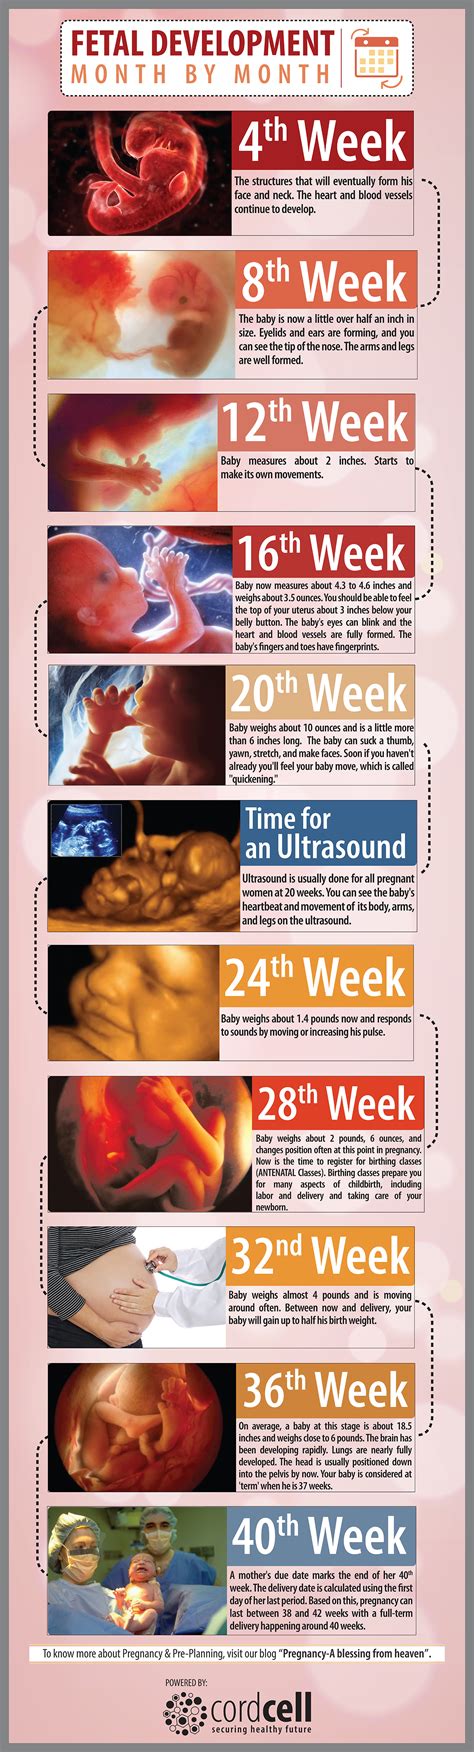 Fetal Development Week By Week The Simplified Guide Vrogue Co